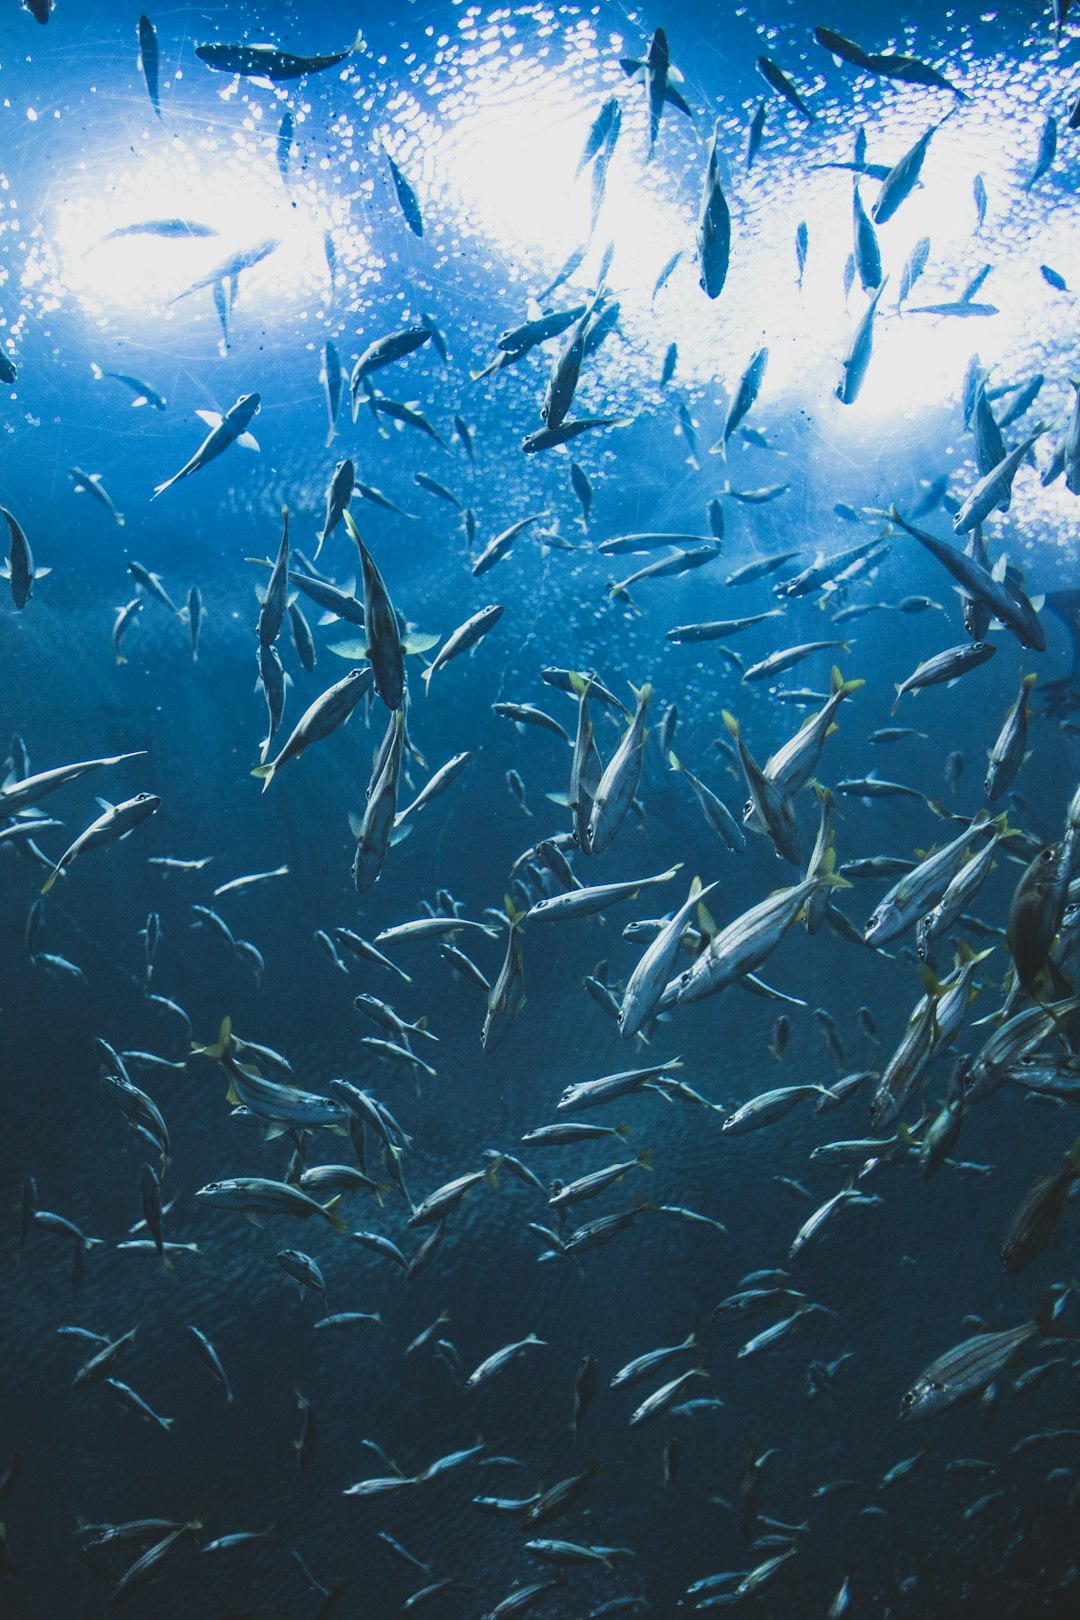 school of fish under water